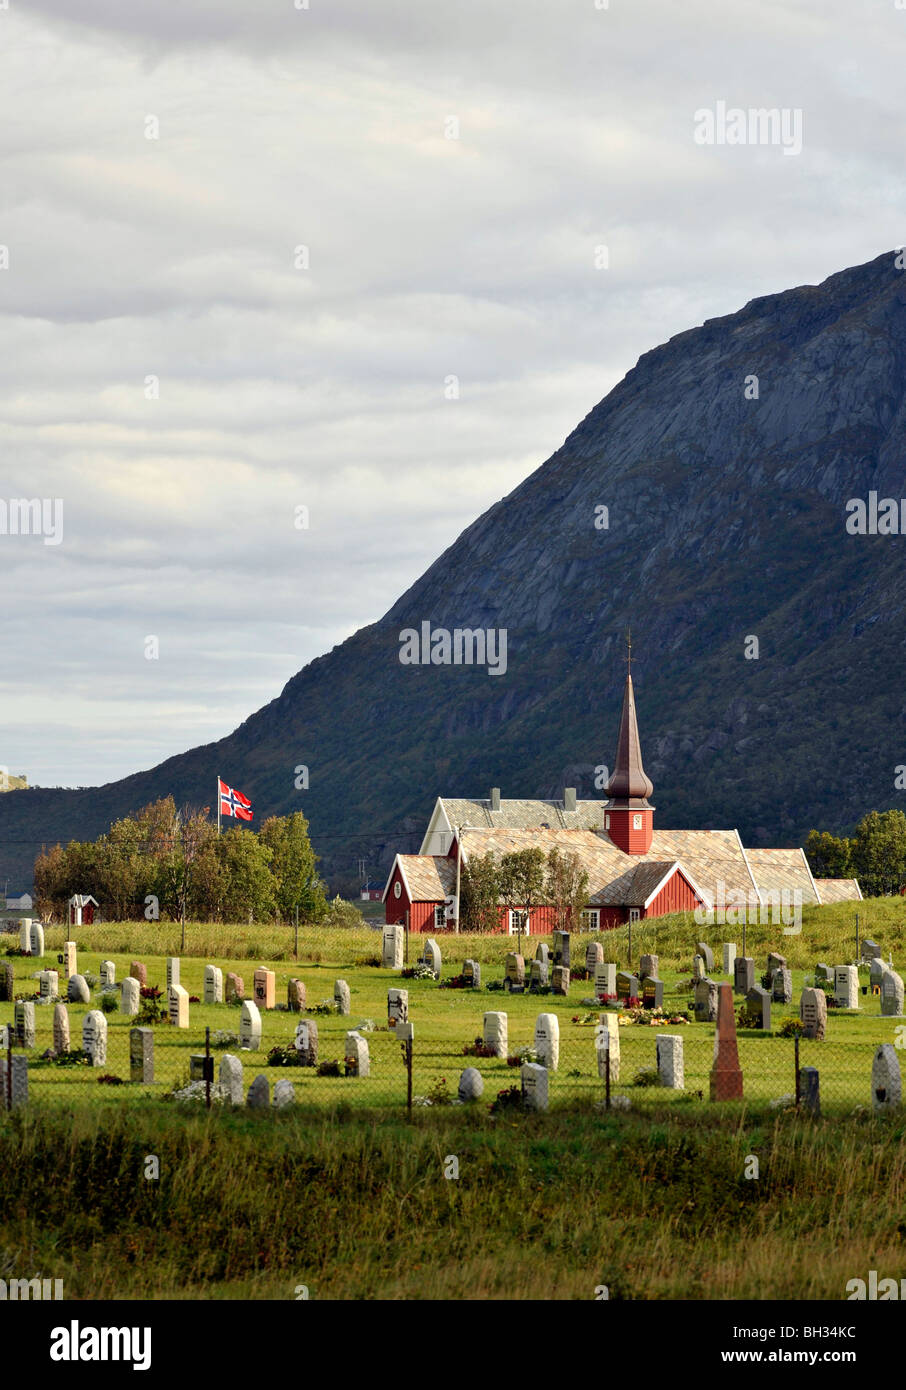 Flakstad église avec dôme en forme d'oignon, Flakstad, îles Lofoten, Norvège du Nord Banque D'Images